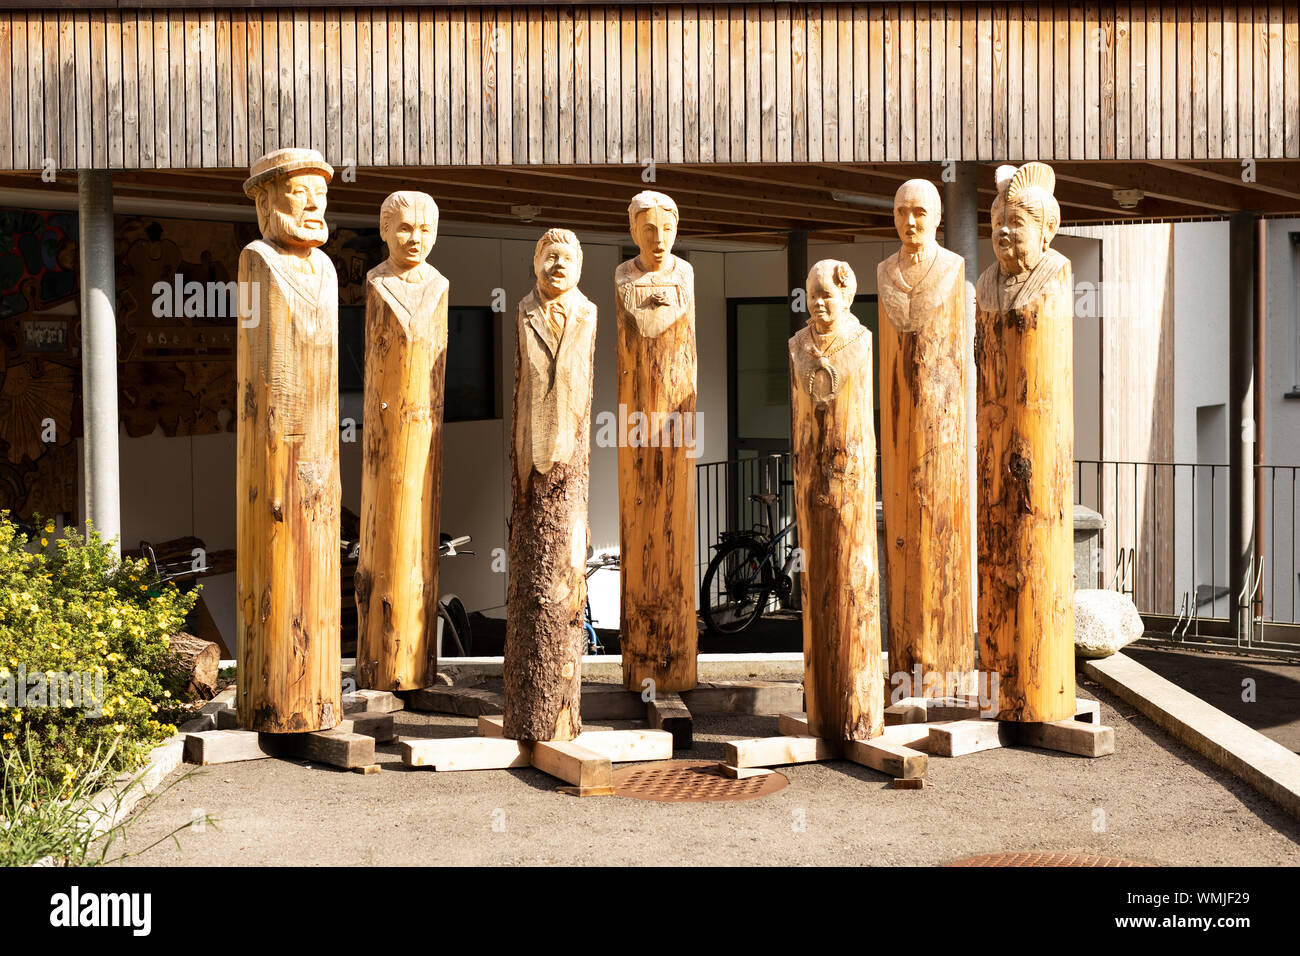 Una muestra de figuras de madera fuera de la Schule für Holzbildhauerei (escuela de talla de madera) en Schleegasse en la ciudad de Brienz, Suiza. Foto de stock